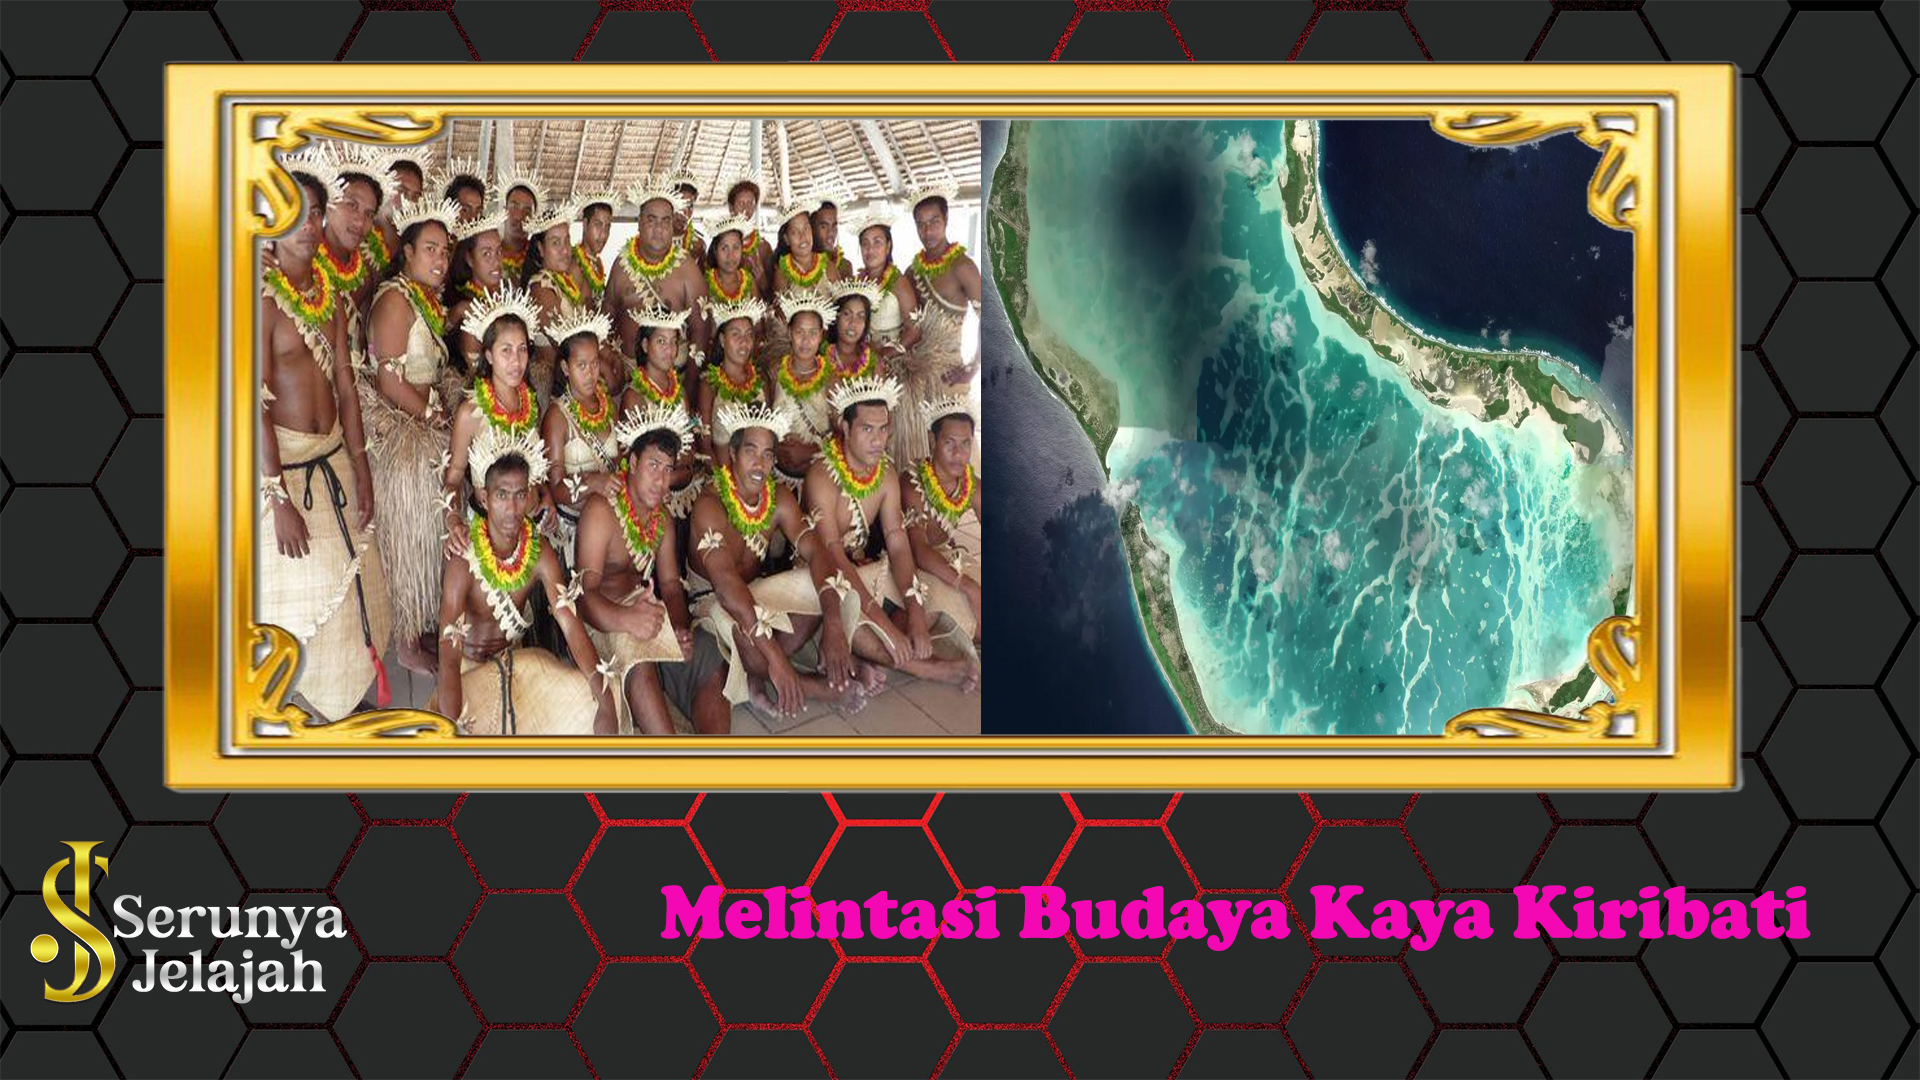 Melintasi Budaya Kaya Kiribati